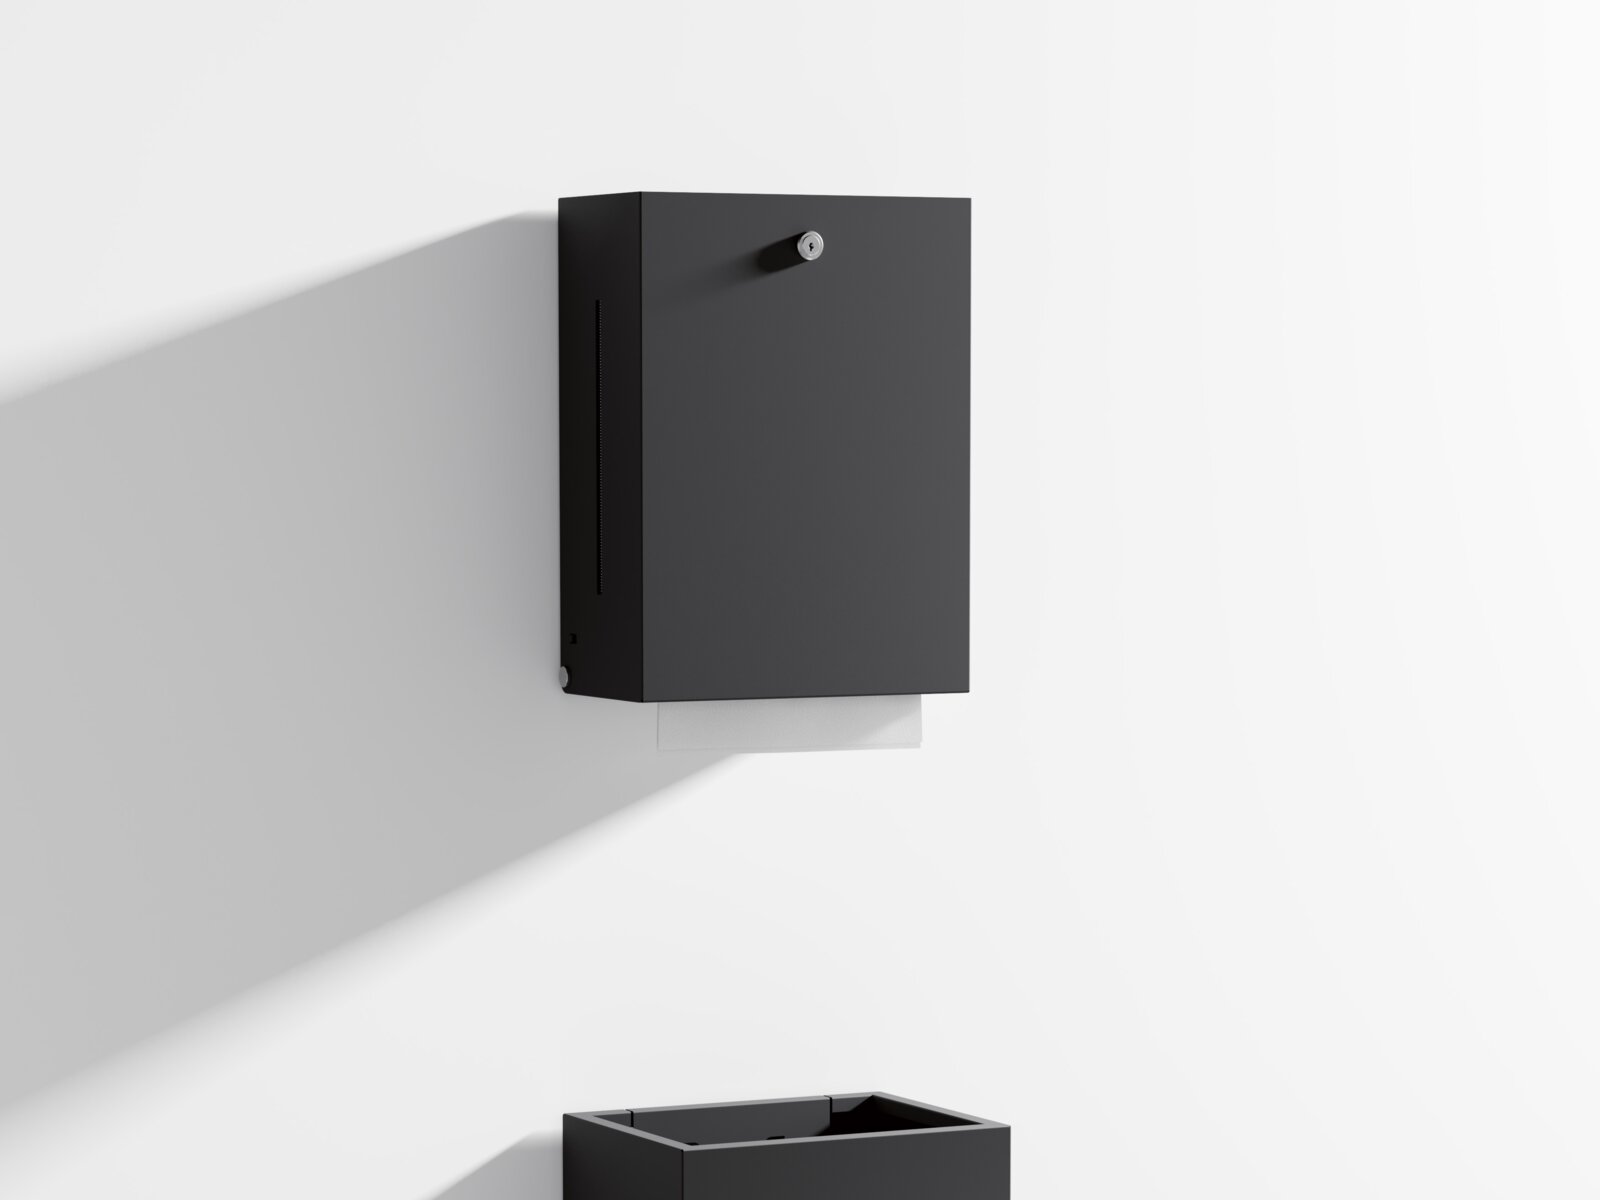 HEWI Papiertuchspender und Abfalleimer mit kantigem Design in Schwarz matt aus Edelstahl